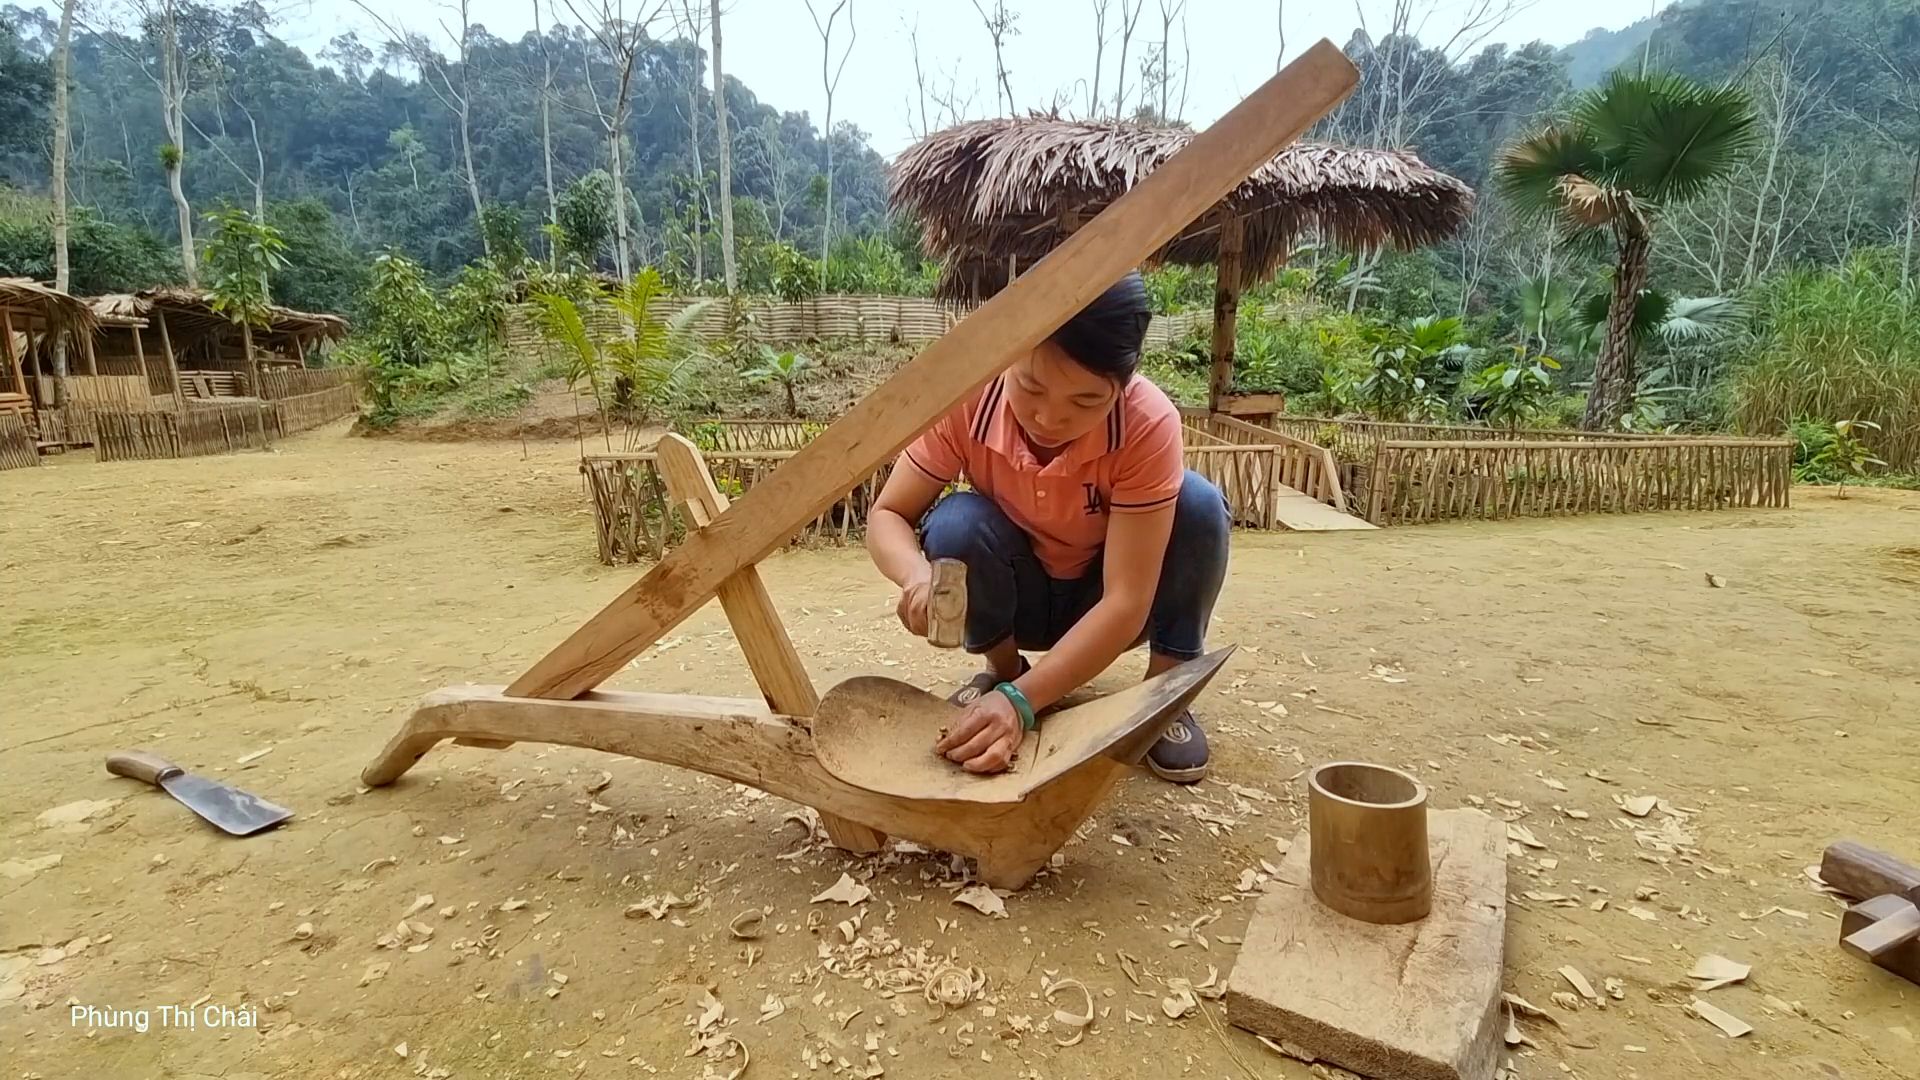 独居深山的女人为了开垦荒田种粮食,竟然纯手工打造了一个曲辕犁